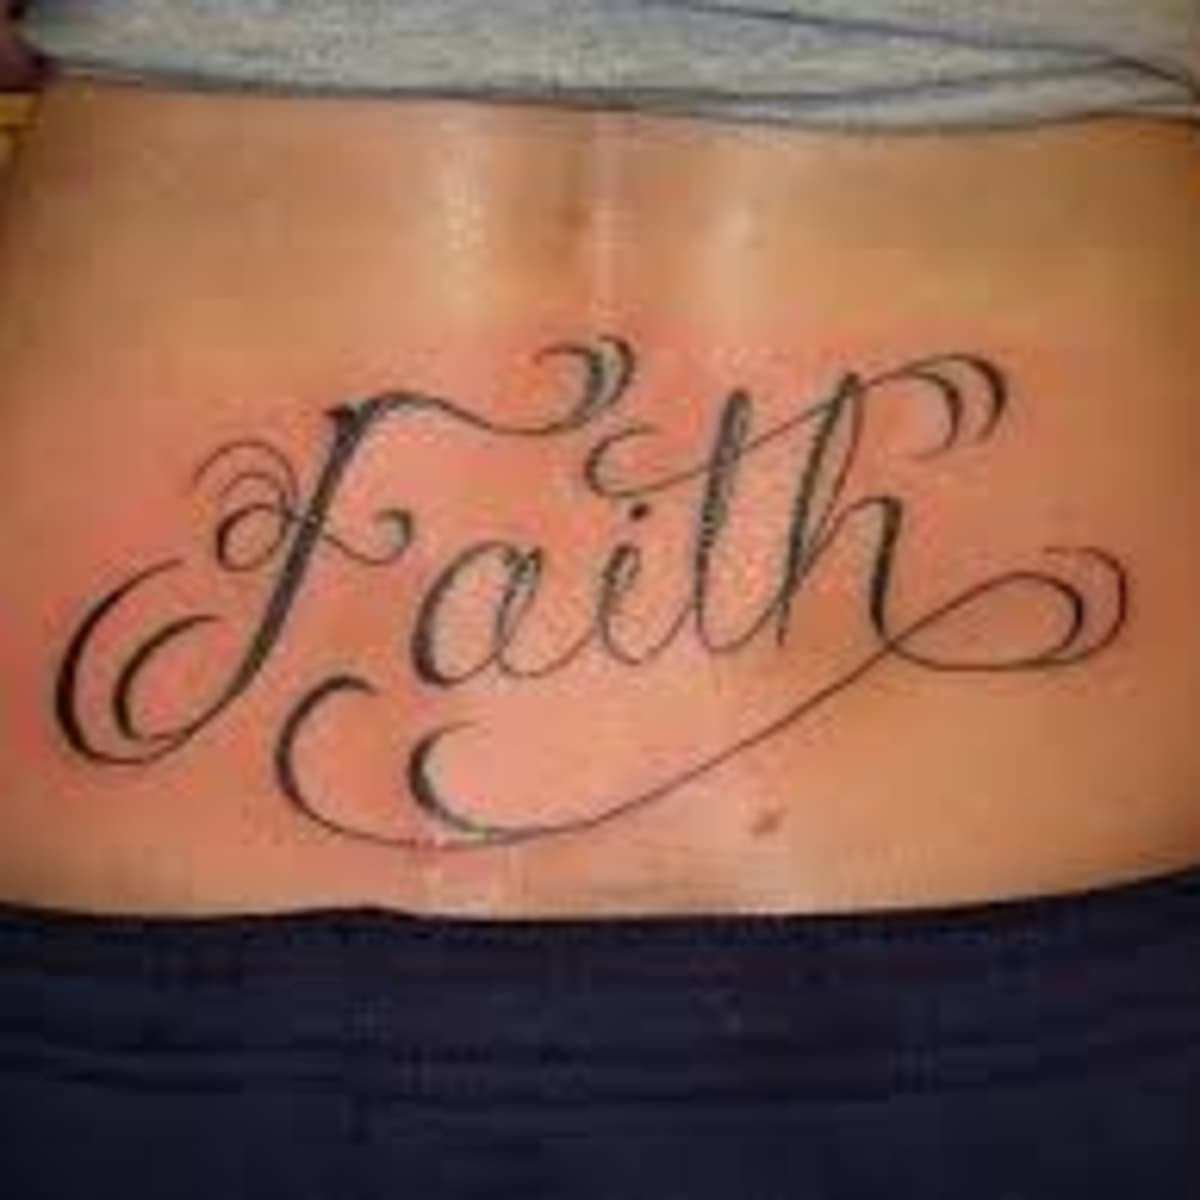 tribal tattoos meaning faith